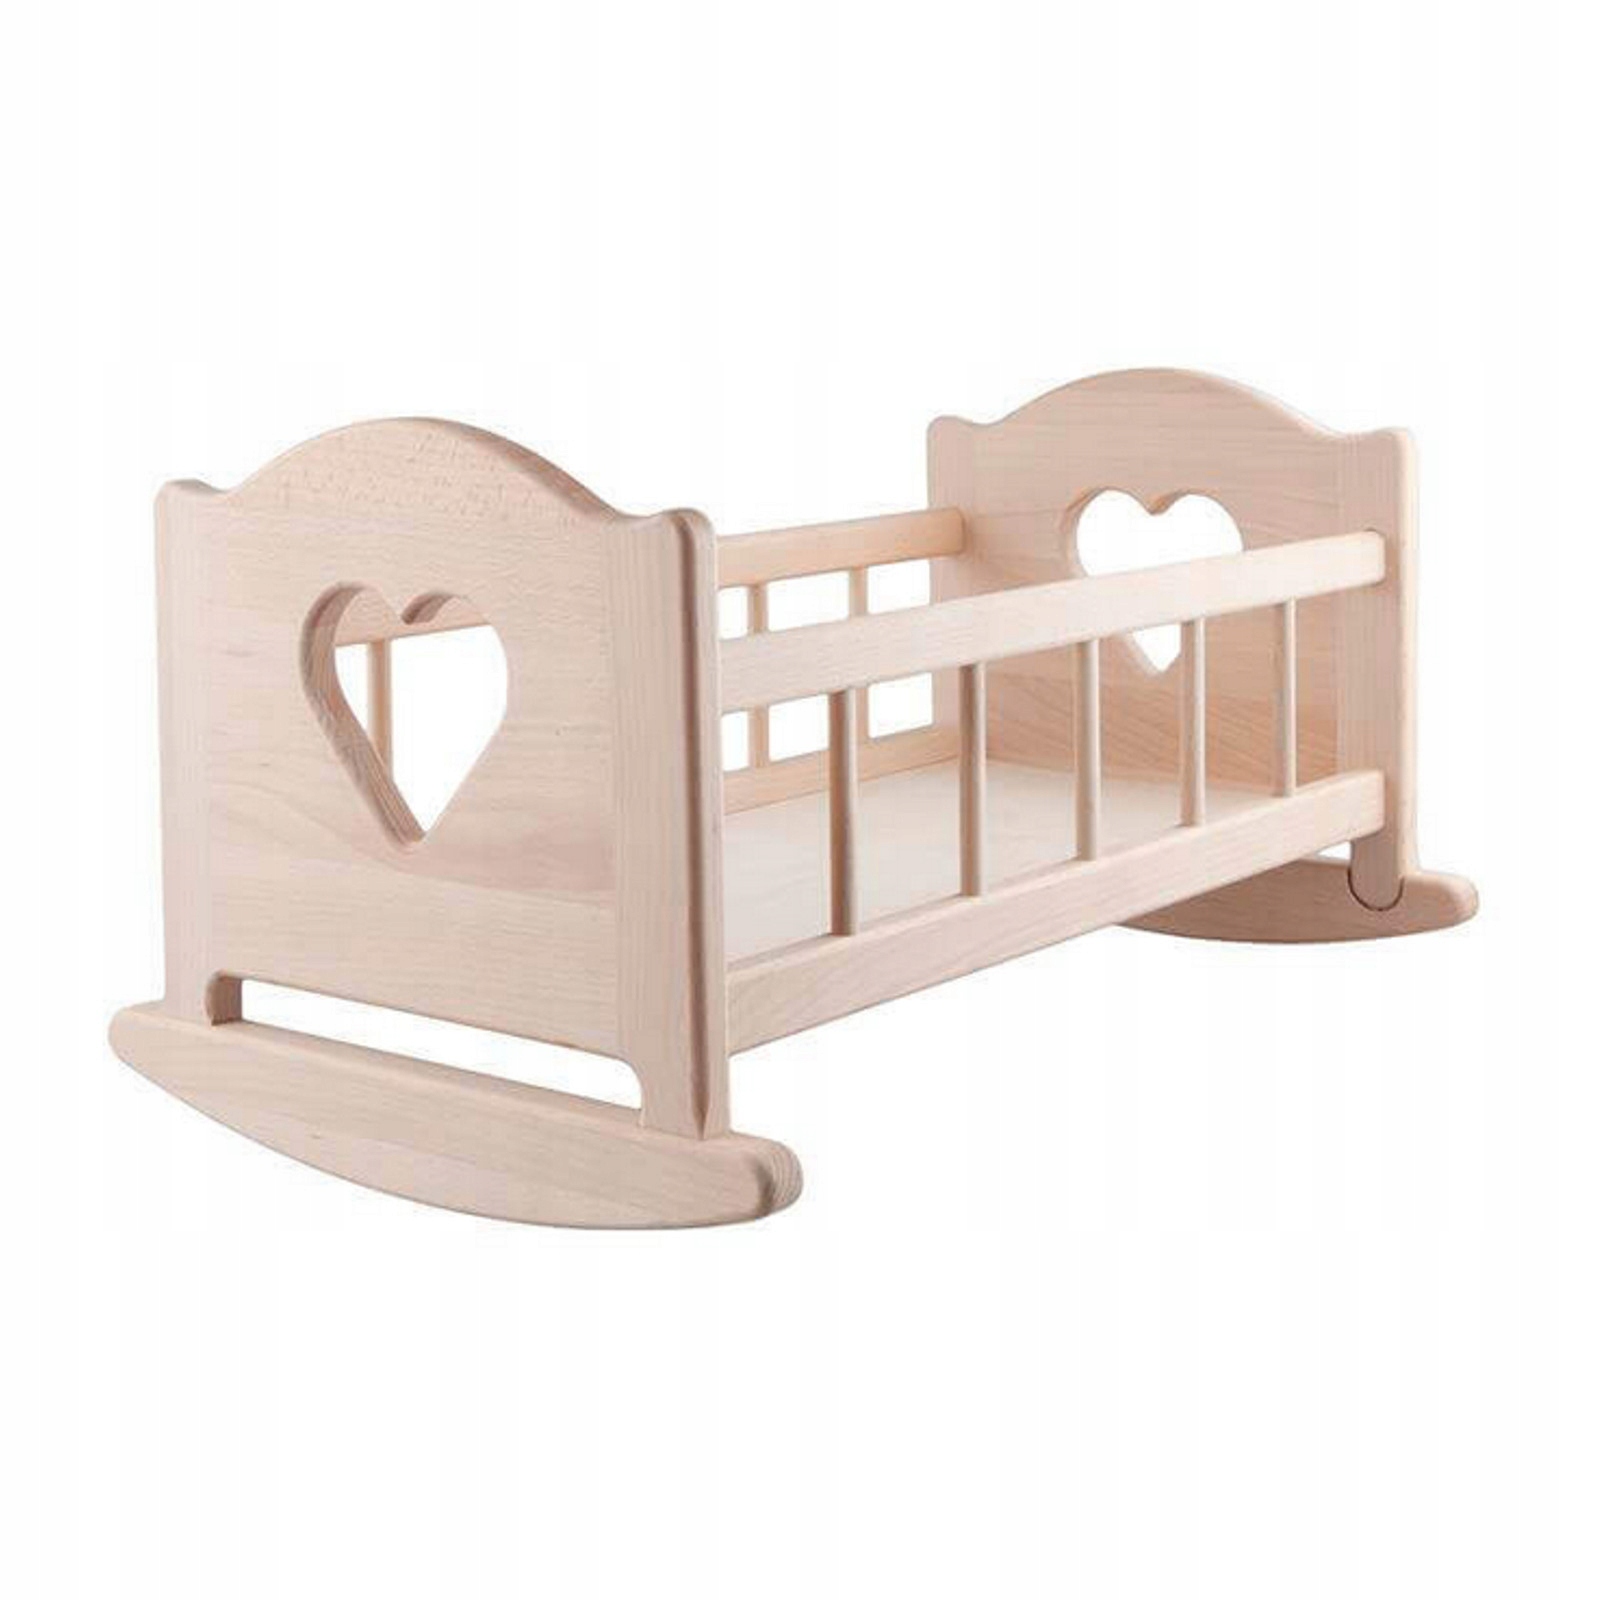 Детская кроватка для кукол. Кроватка для кукол, деревянная. Кровать для кукол деревянная. Деревянная детская кроватка для куклы. Игрушечная кроватка для куклы деревянная.